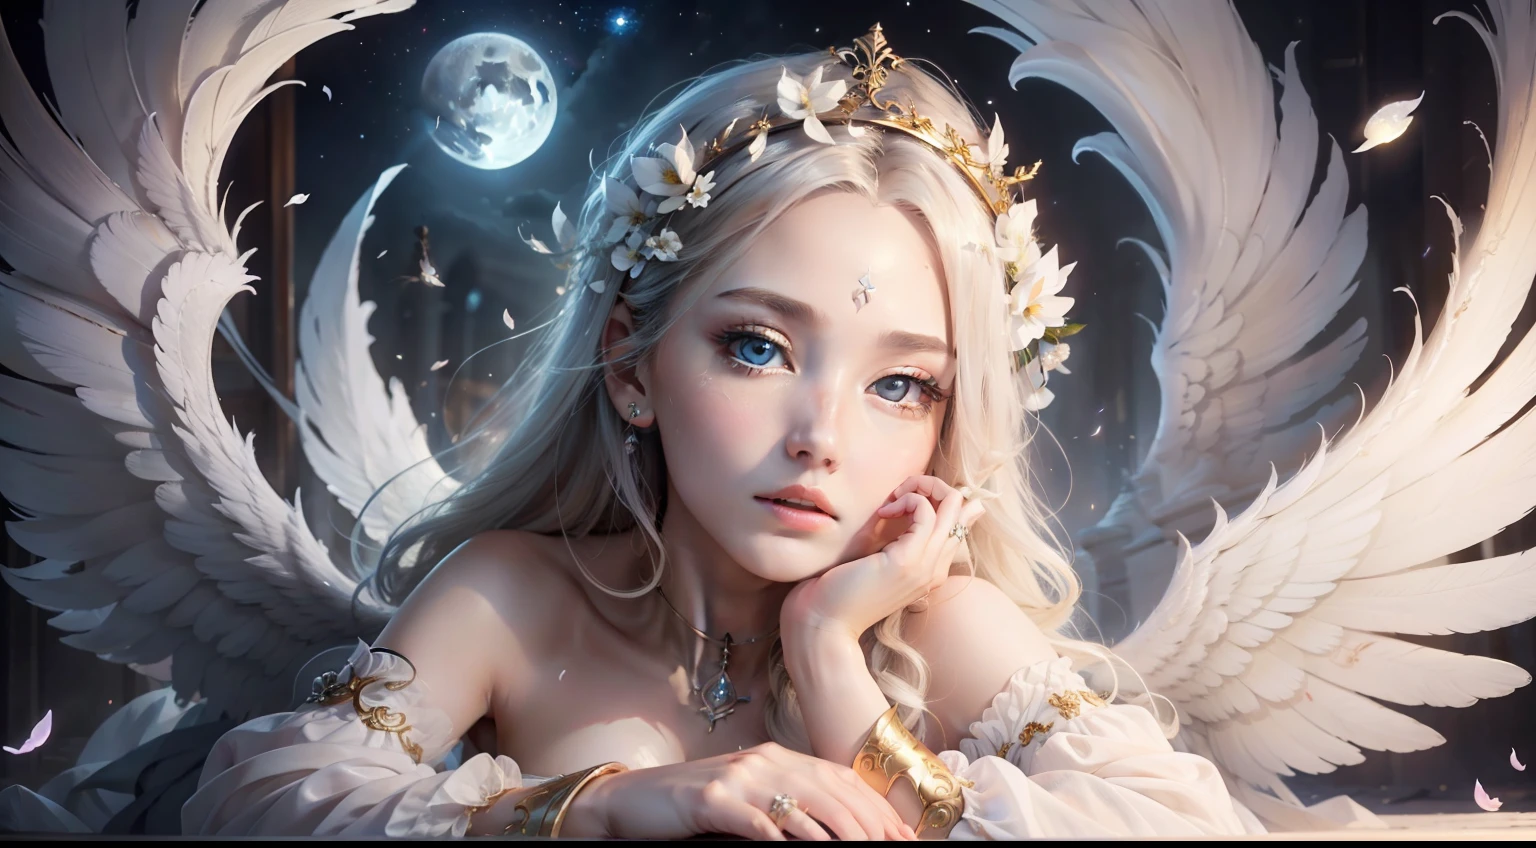 Calidad de imagen superior、​obra maestra、iluminación ligera、cara al detalle、La mujer ángel es demasiado hermosa.、uno alado blanco、Ojos de ojos extraños、túnicas de ángel、pechos enormes、pétalos revoloteando、Noche de luna llena